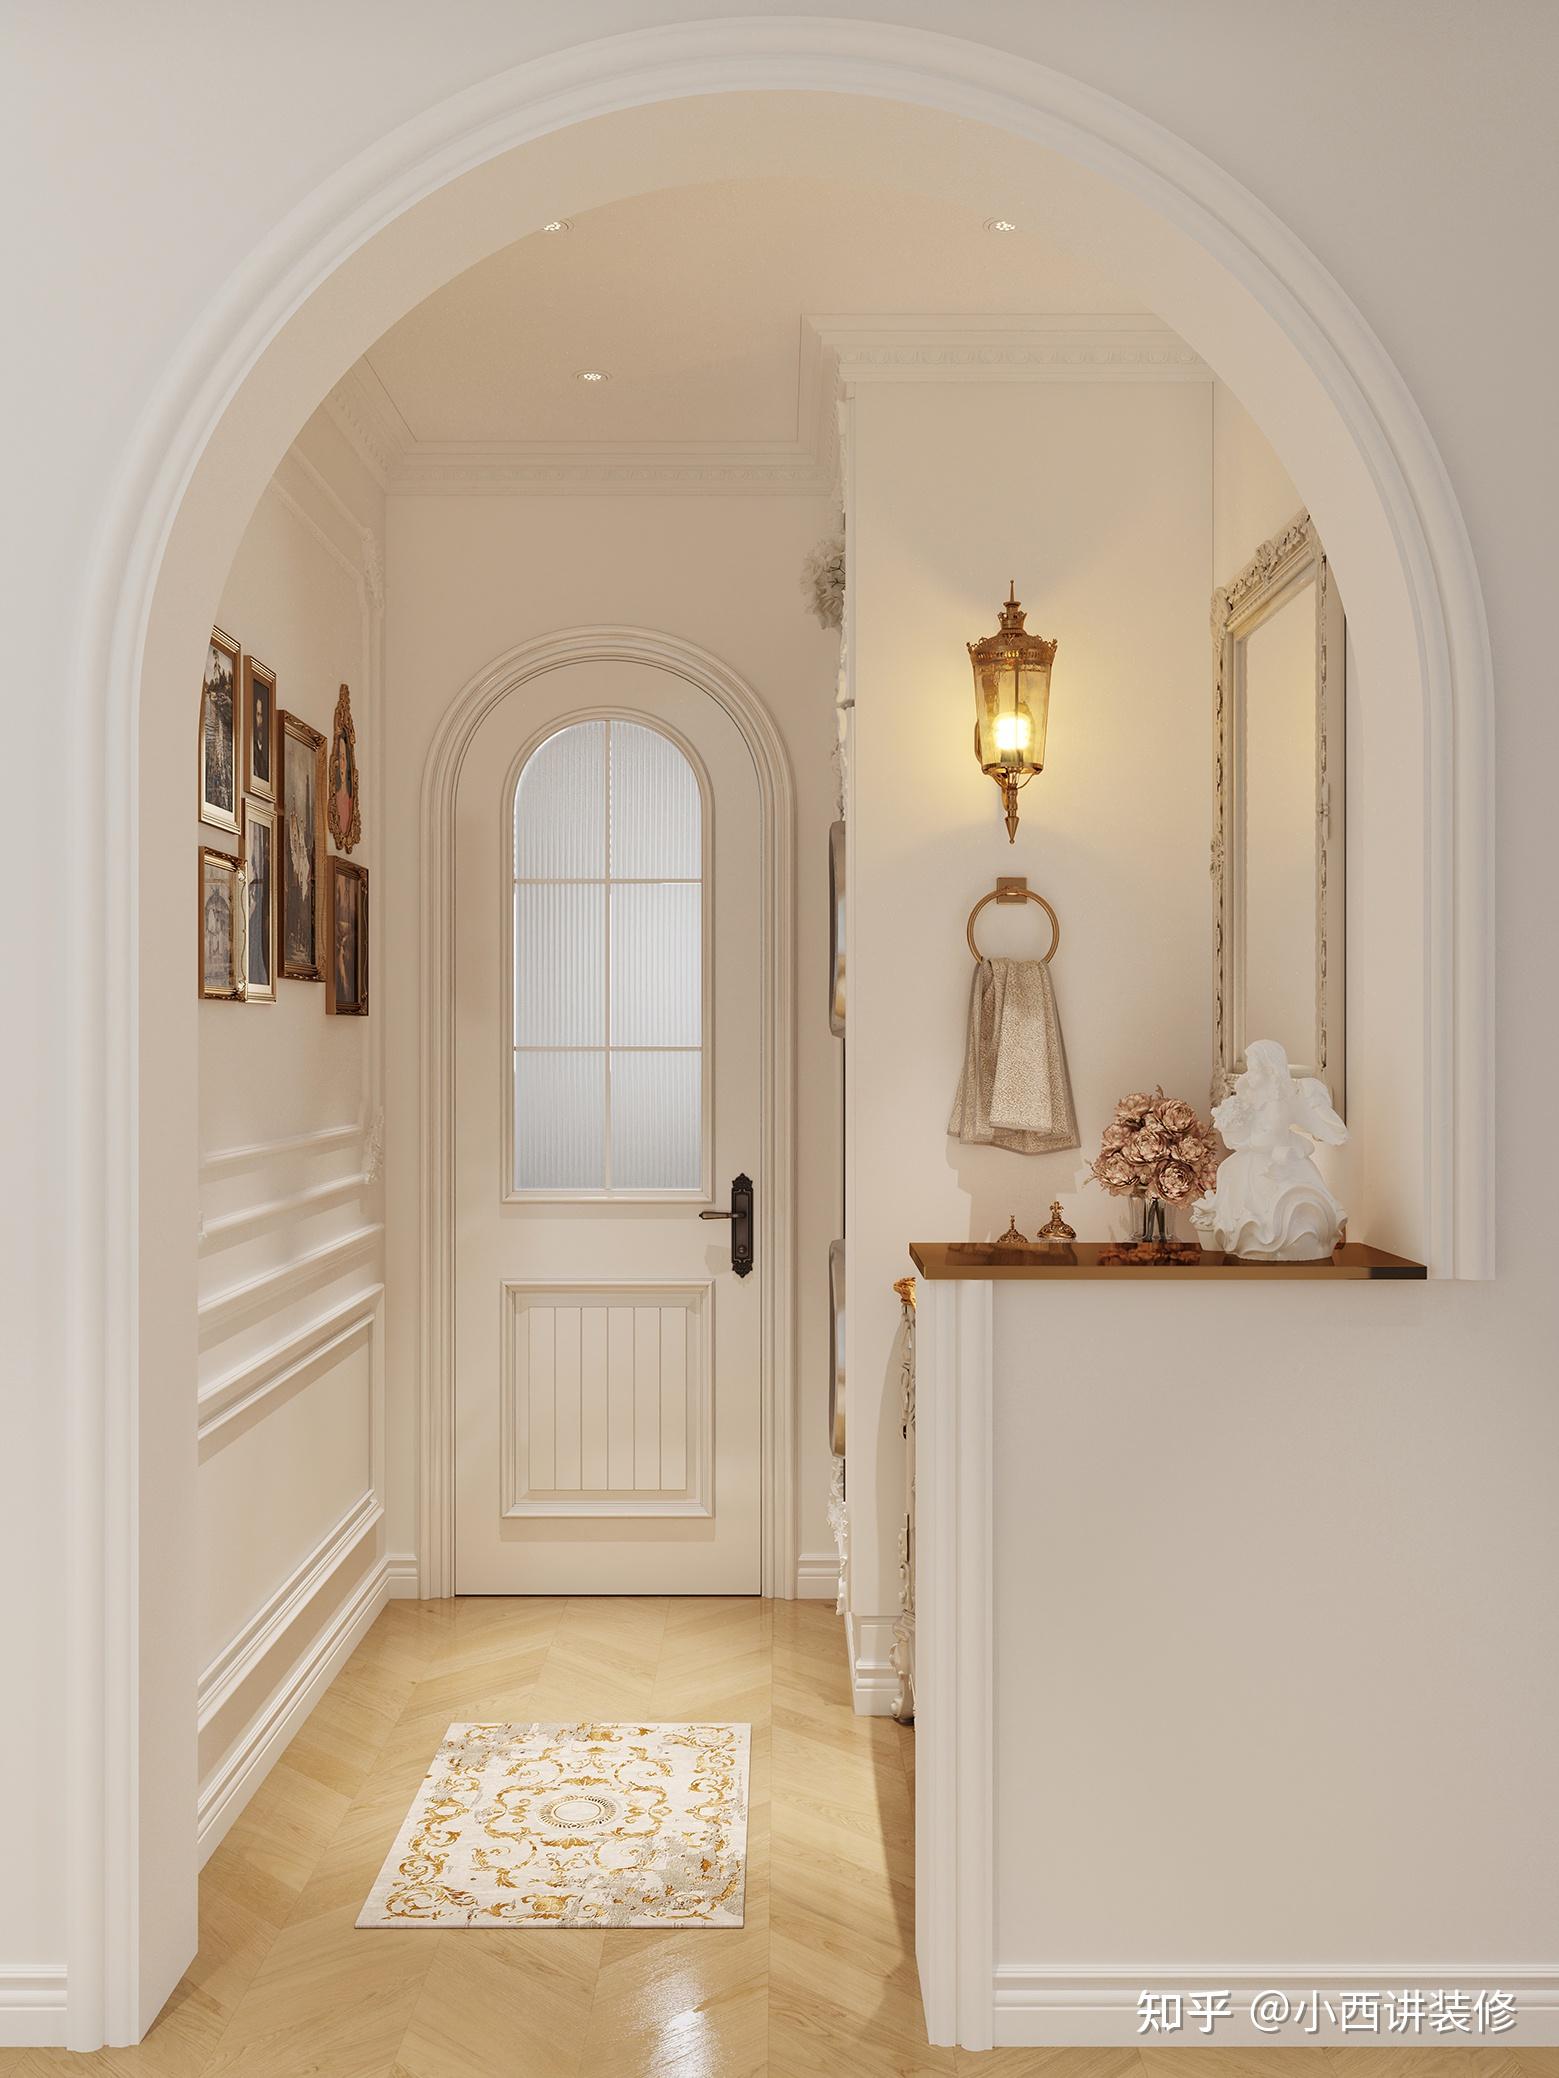 高端拱门装饰趋势启示的室内设计效果图